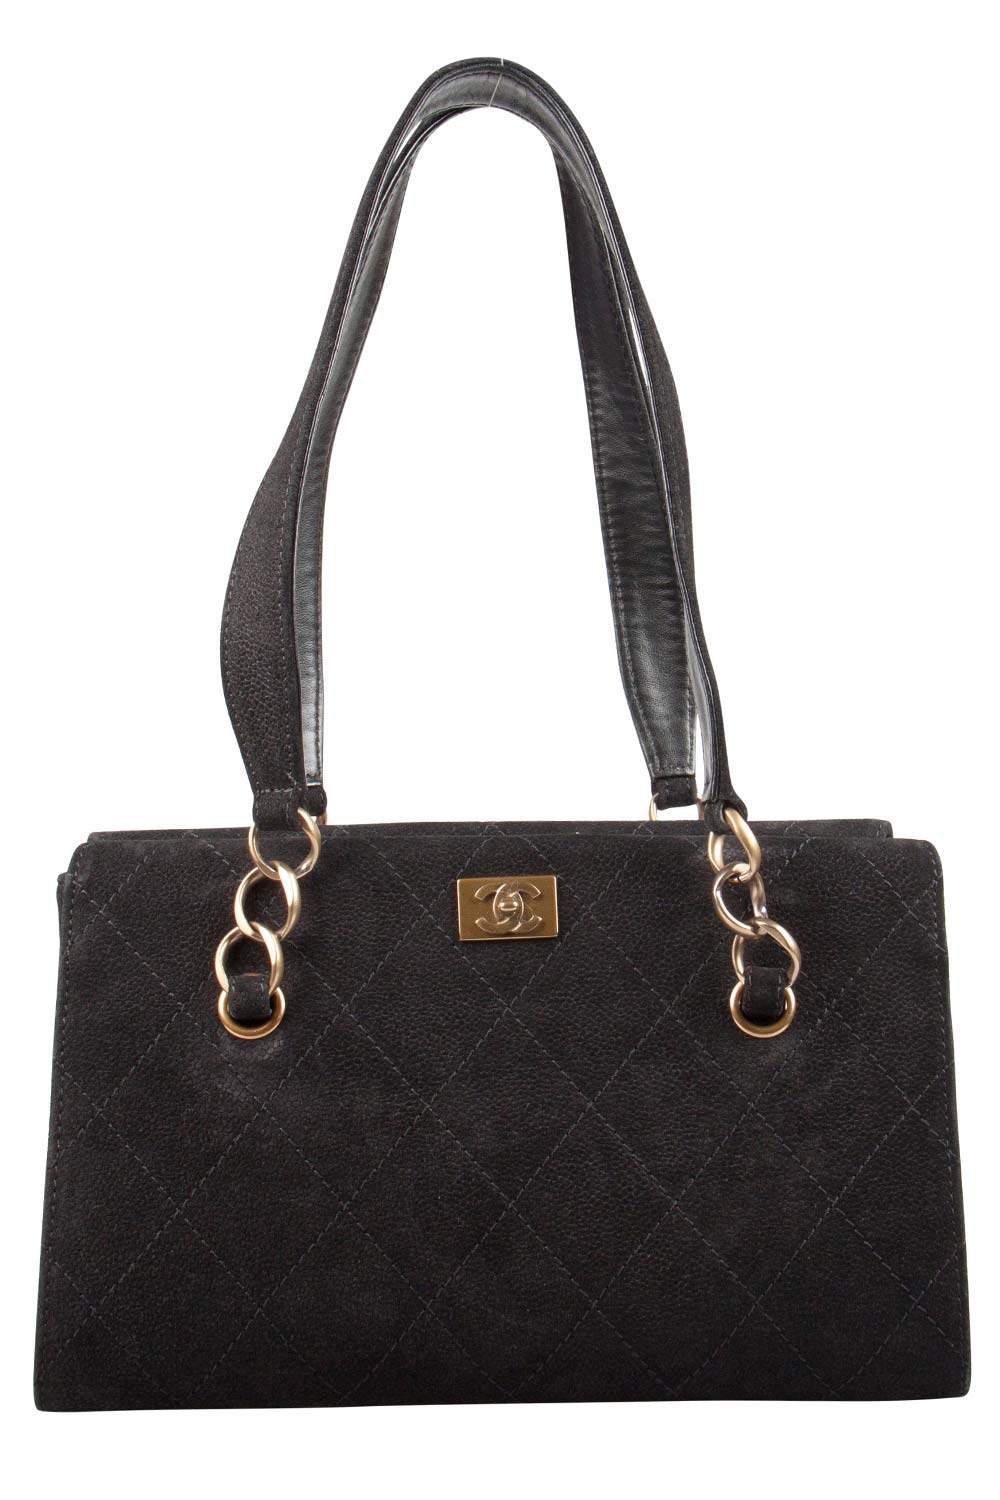 Chanel Black Nubuck Leather Chain Shoulder Bag